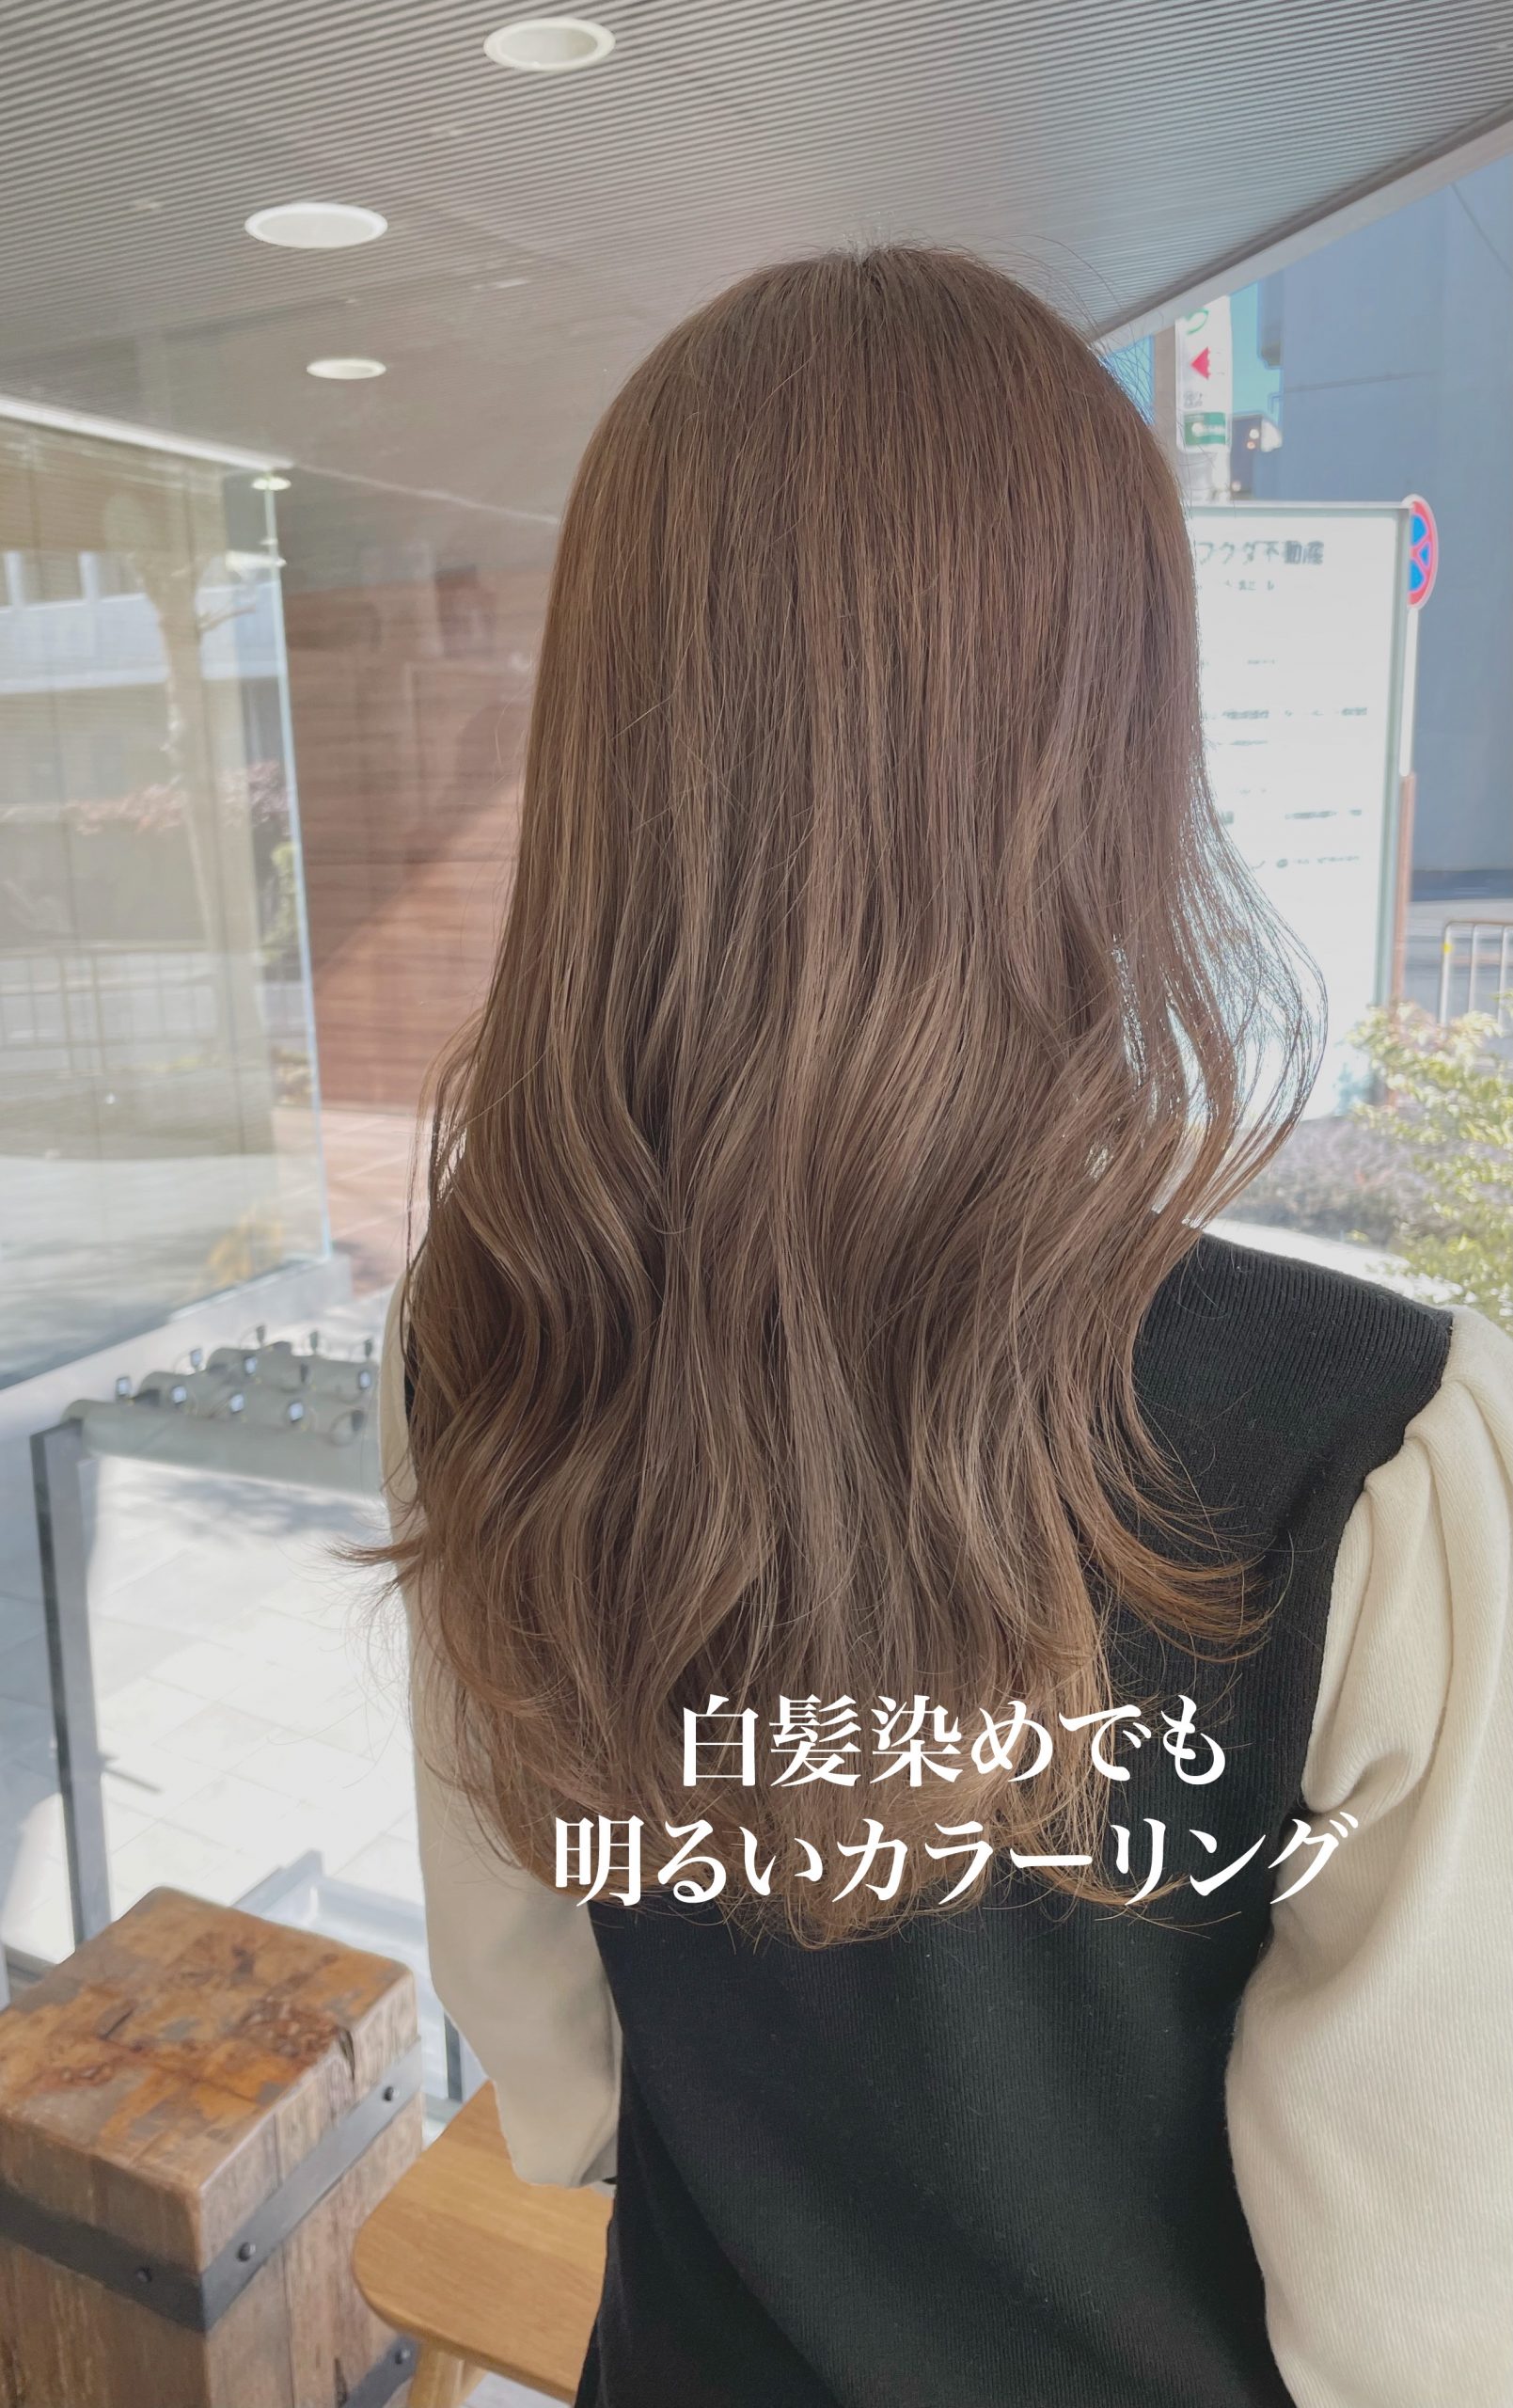 ハイライトで白髪をぼかして明るい髪色に 奈良 京都 大阪の美容室 ハピネス